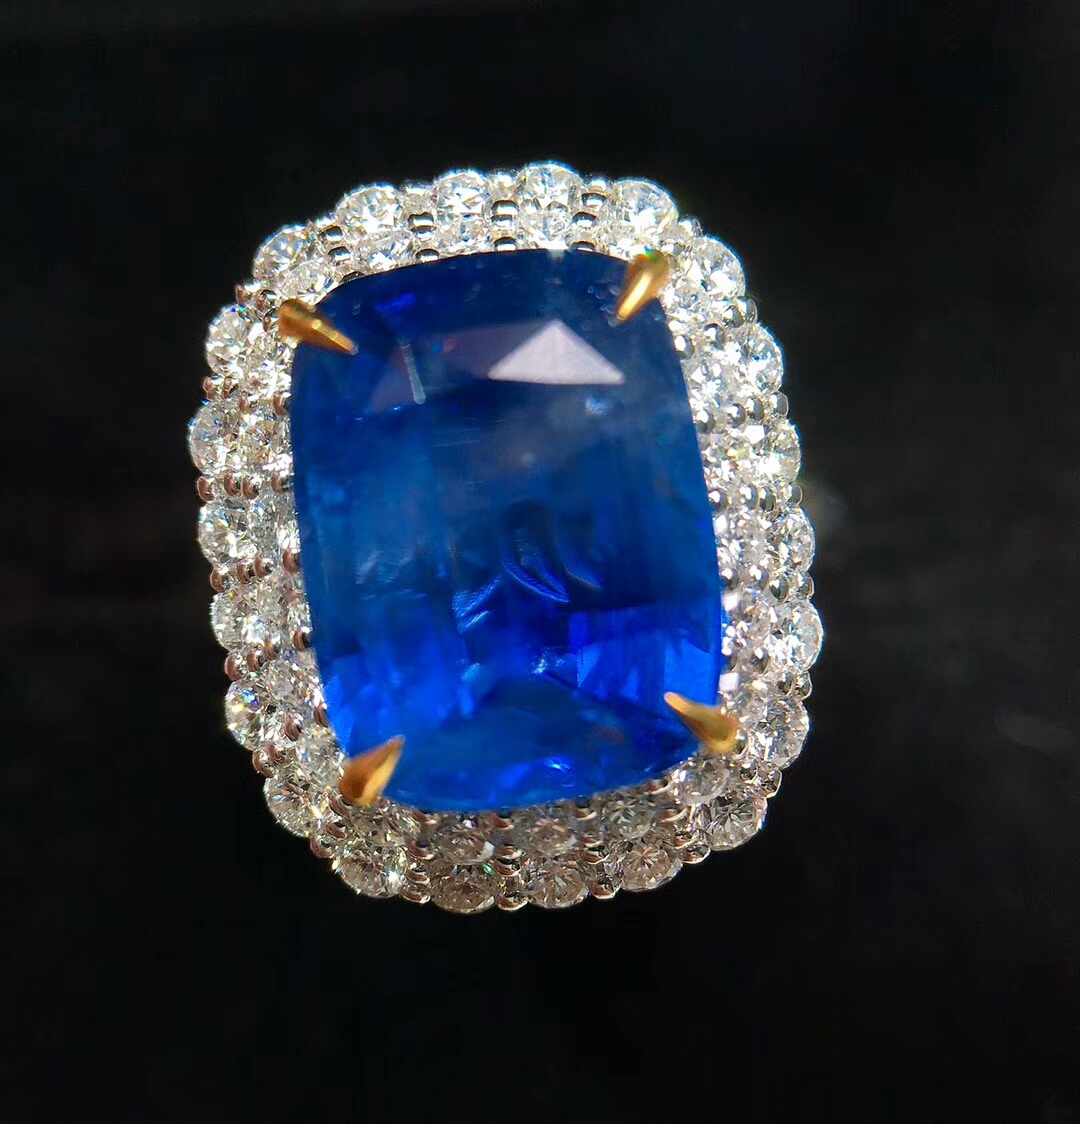 18k无烧蓝宝石戒指颜色漂亮晶体极微棉丝绒感火彩超棒的豪华钻石镶嵌